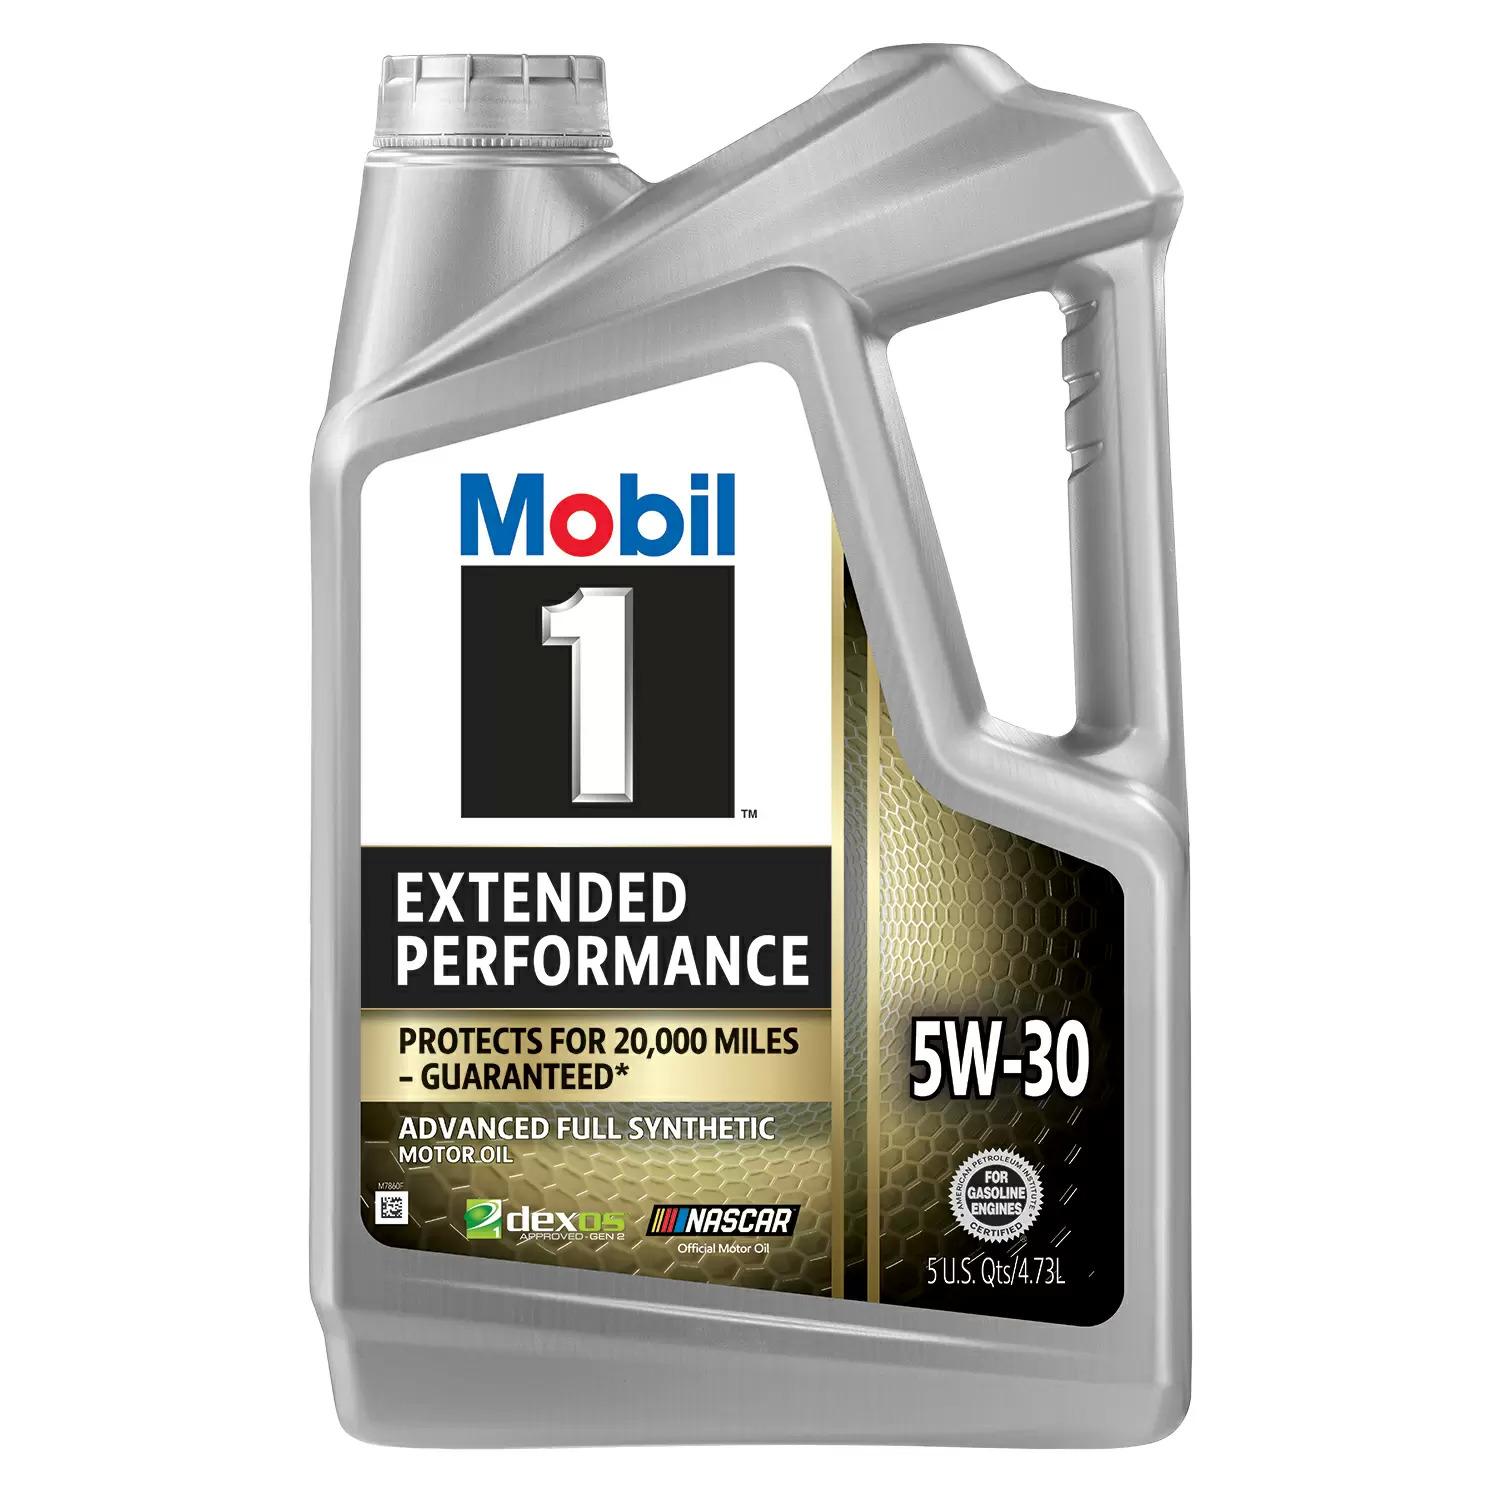 5-Quart Mobil 1 Extended Performance 5W-30 Full Synthetic Motor Oil for $9.37